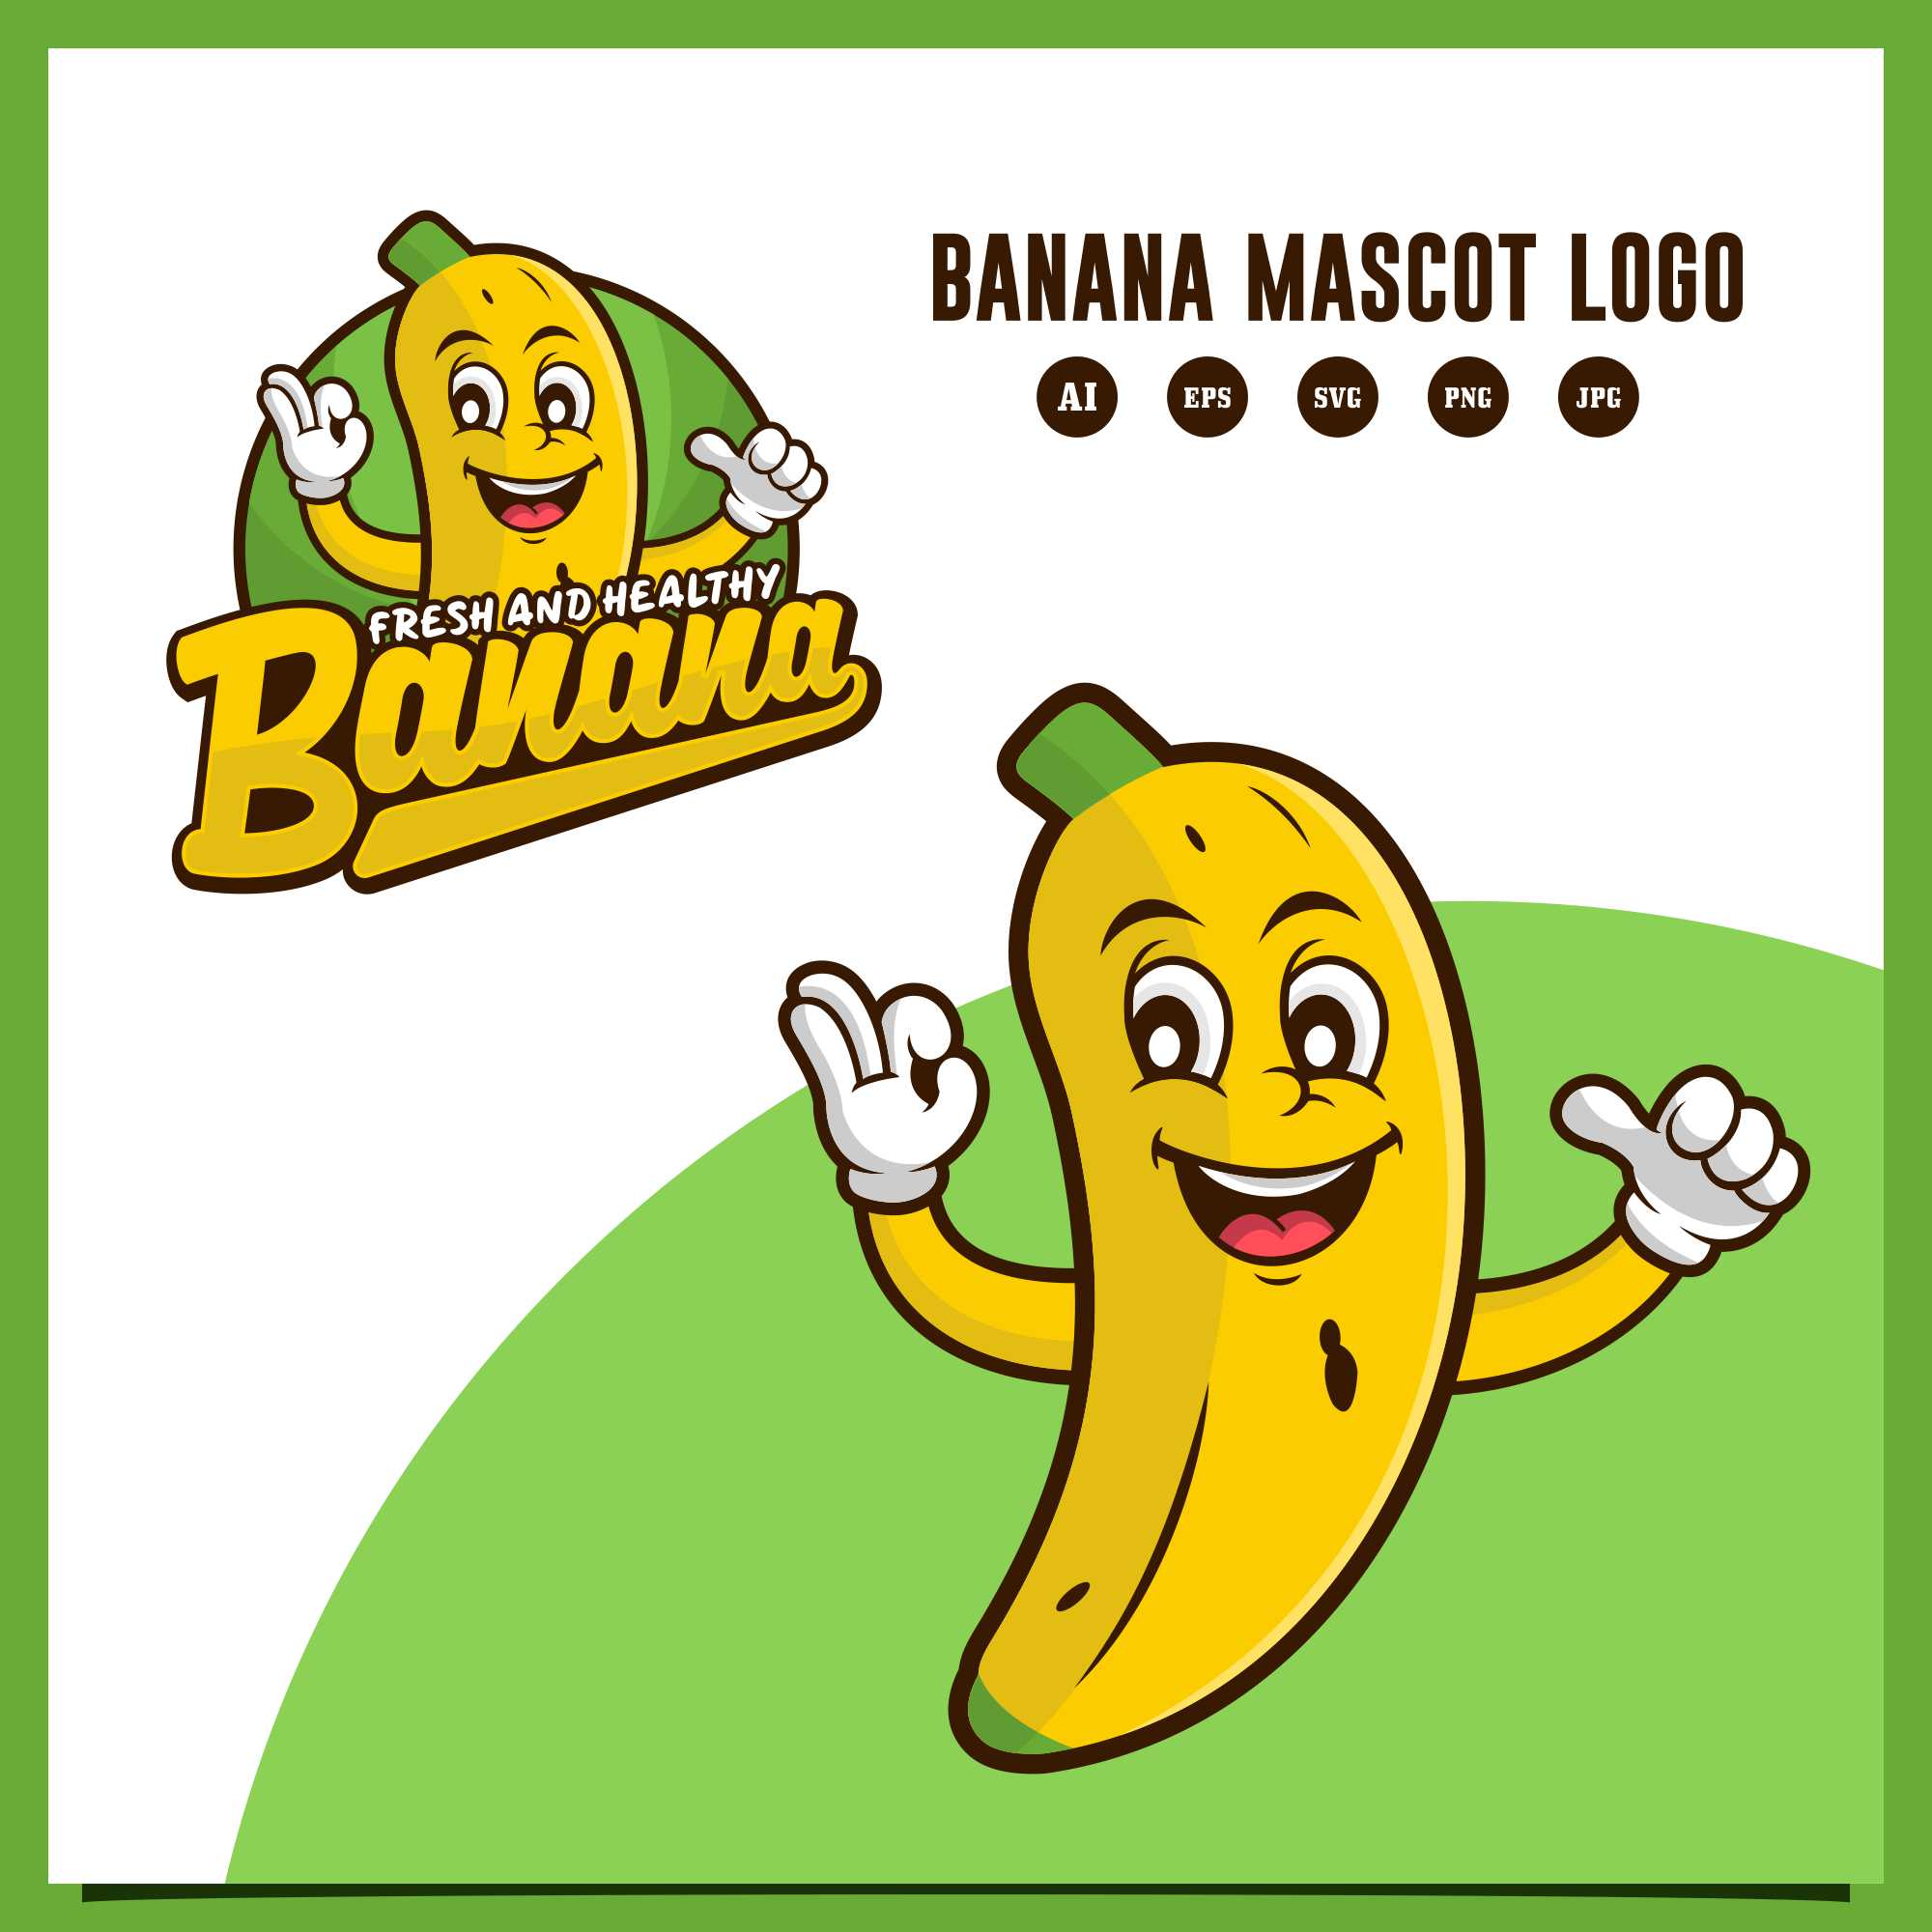 Set Banana mascot fresh and healthy Logo design - $6 cover image.